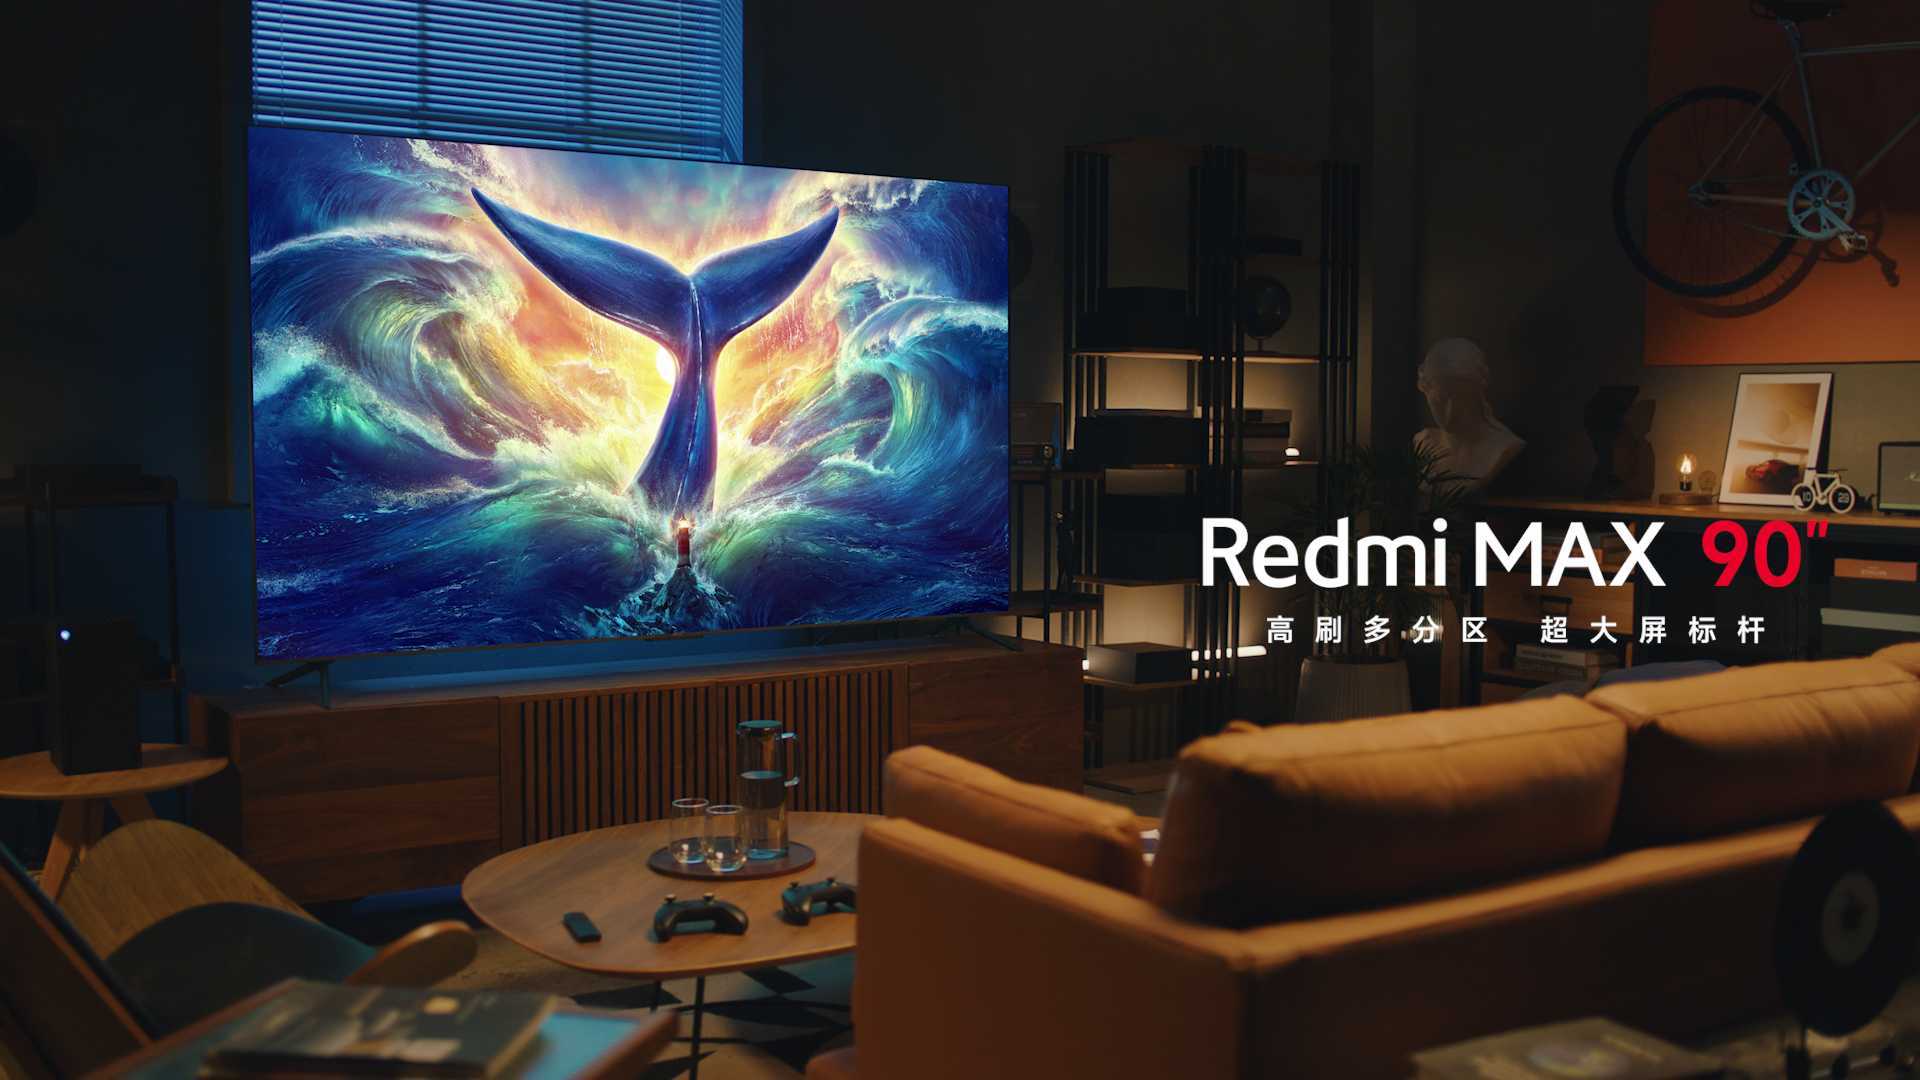 「Redmi MAX 90"电视」新品TVC